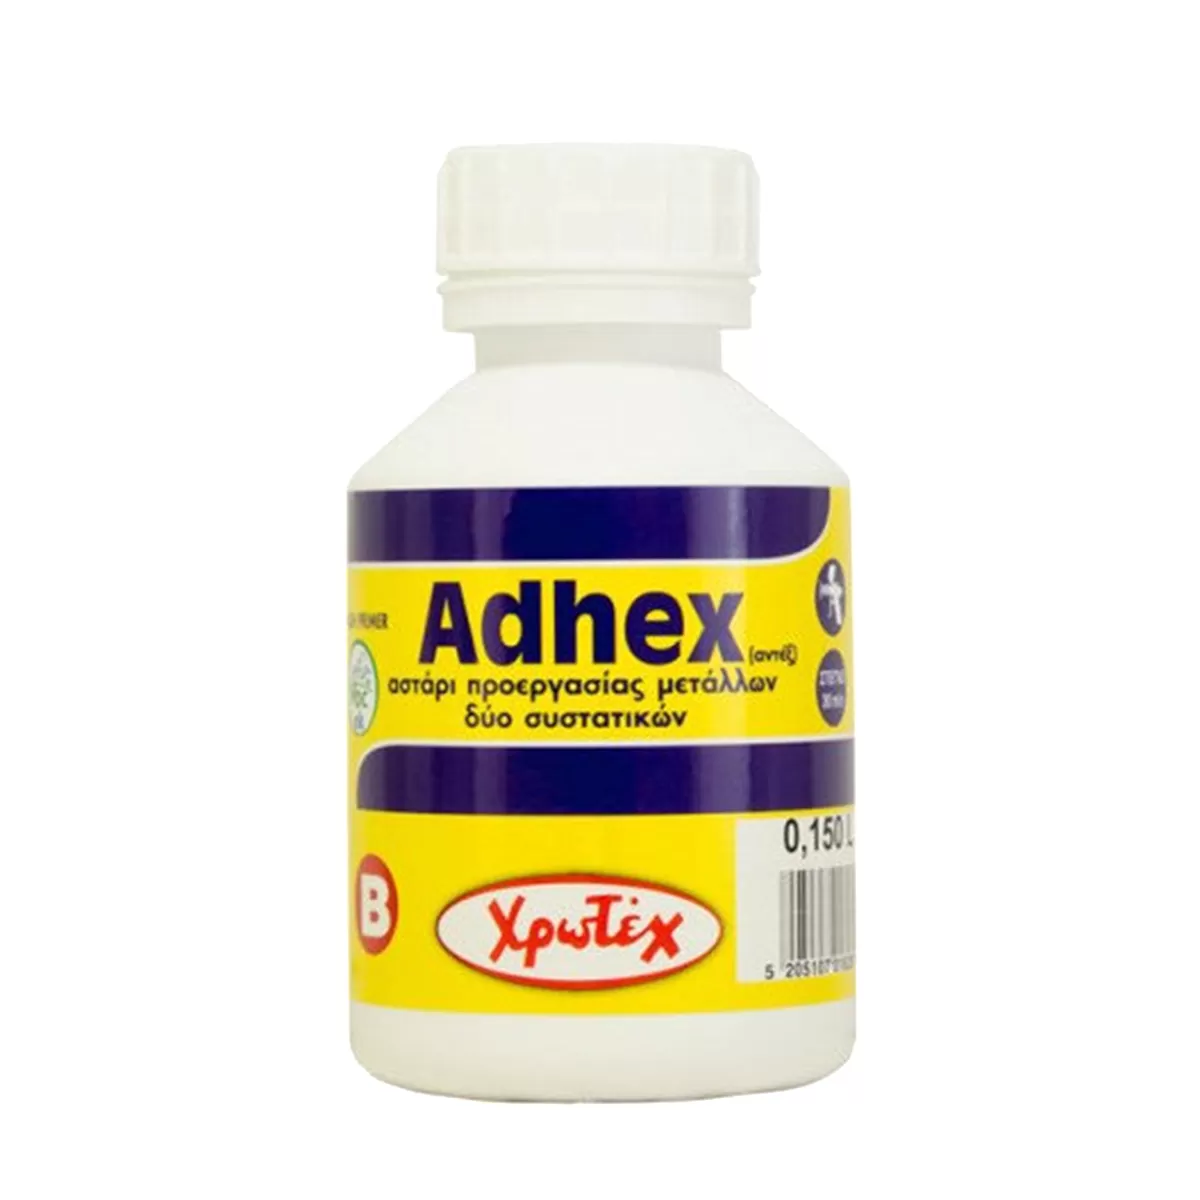 ADHEX ΑΣΤΑΡΙ 2 ΣΥΣΤΑΤΙΚΩΝ (0.6L-150ml)